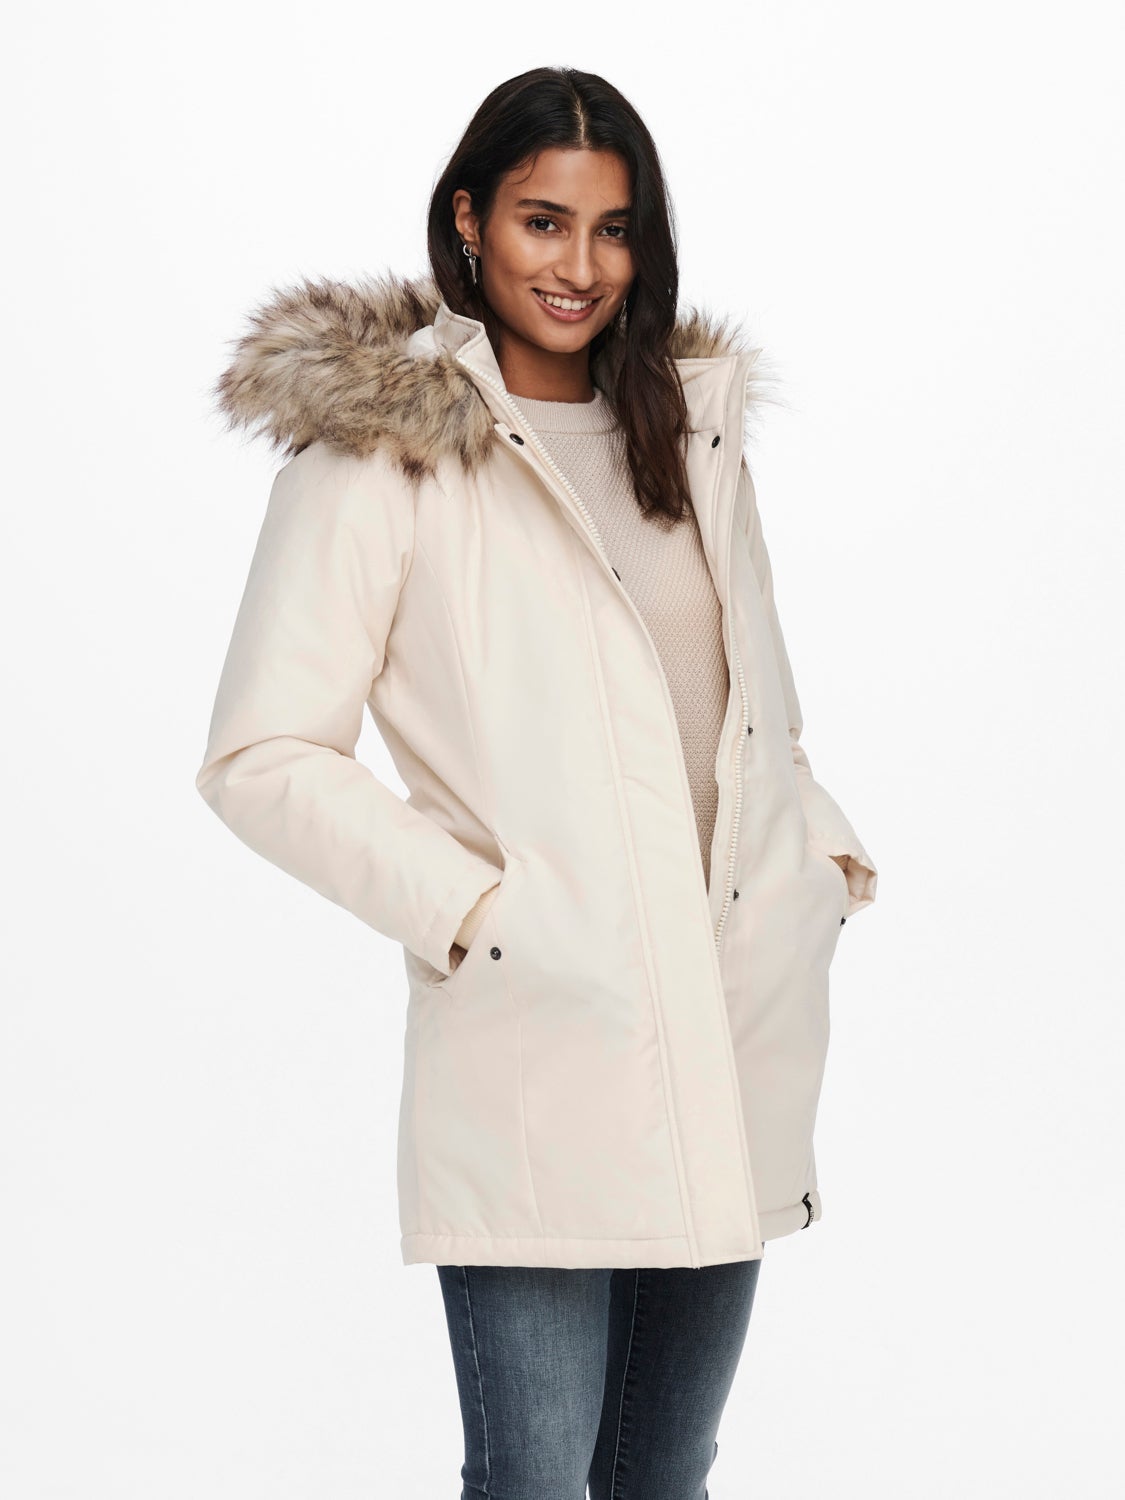 discount 94% NoName vest Beige S WOMEN FASHION Jackets Fur 